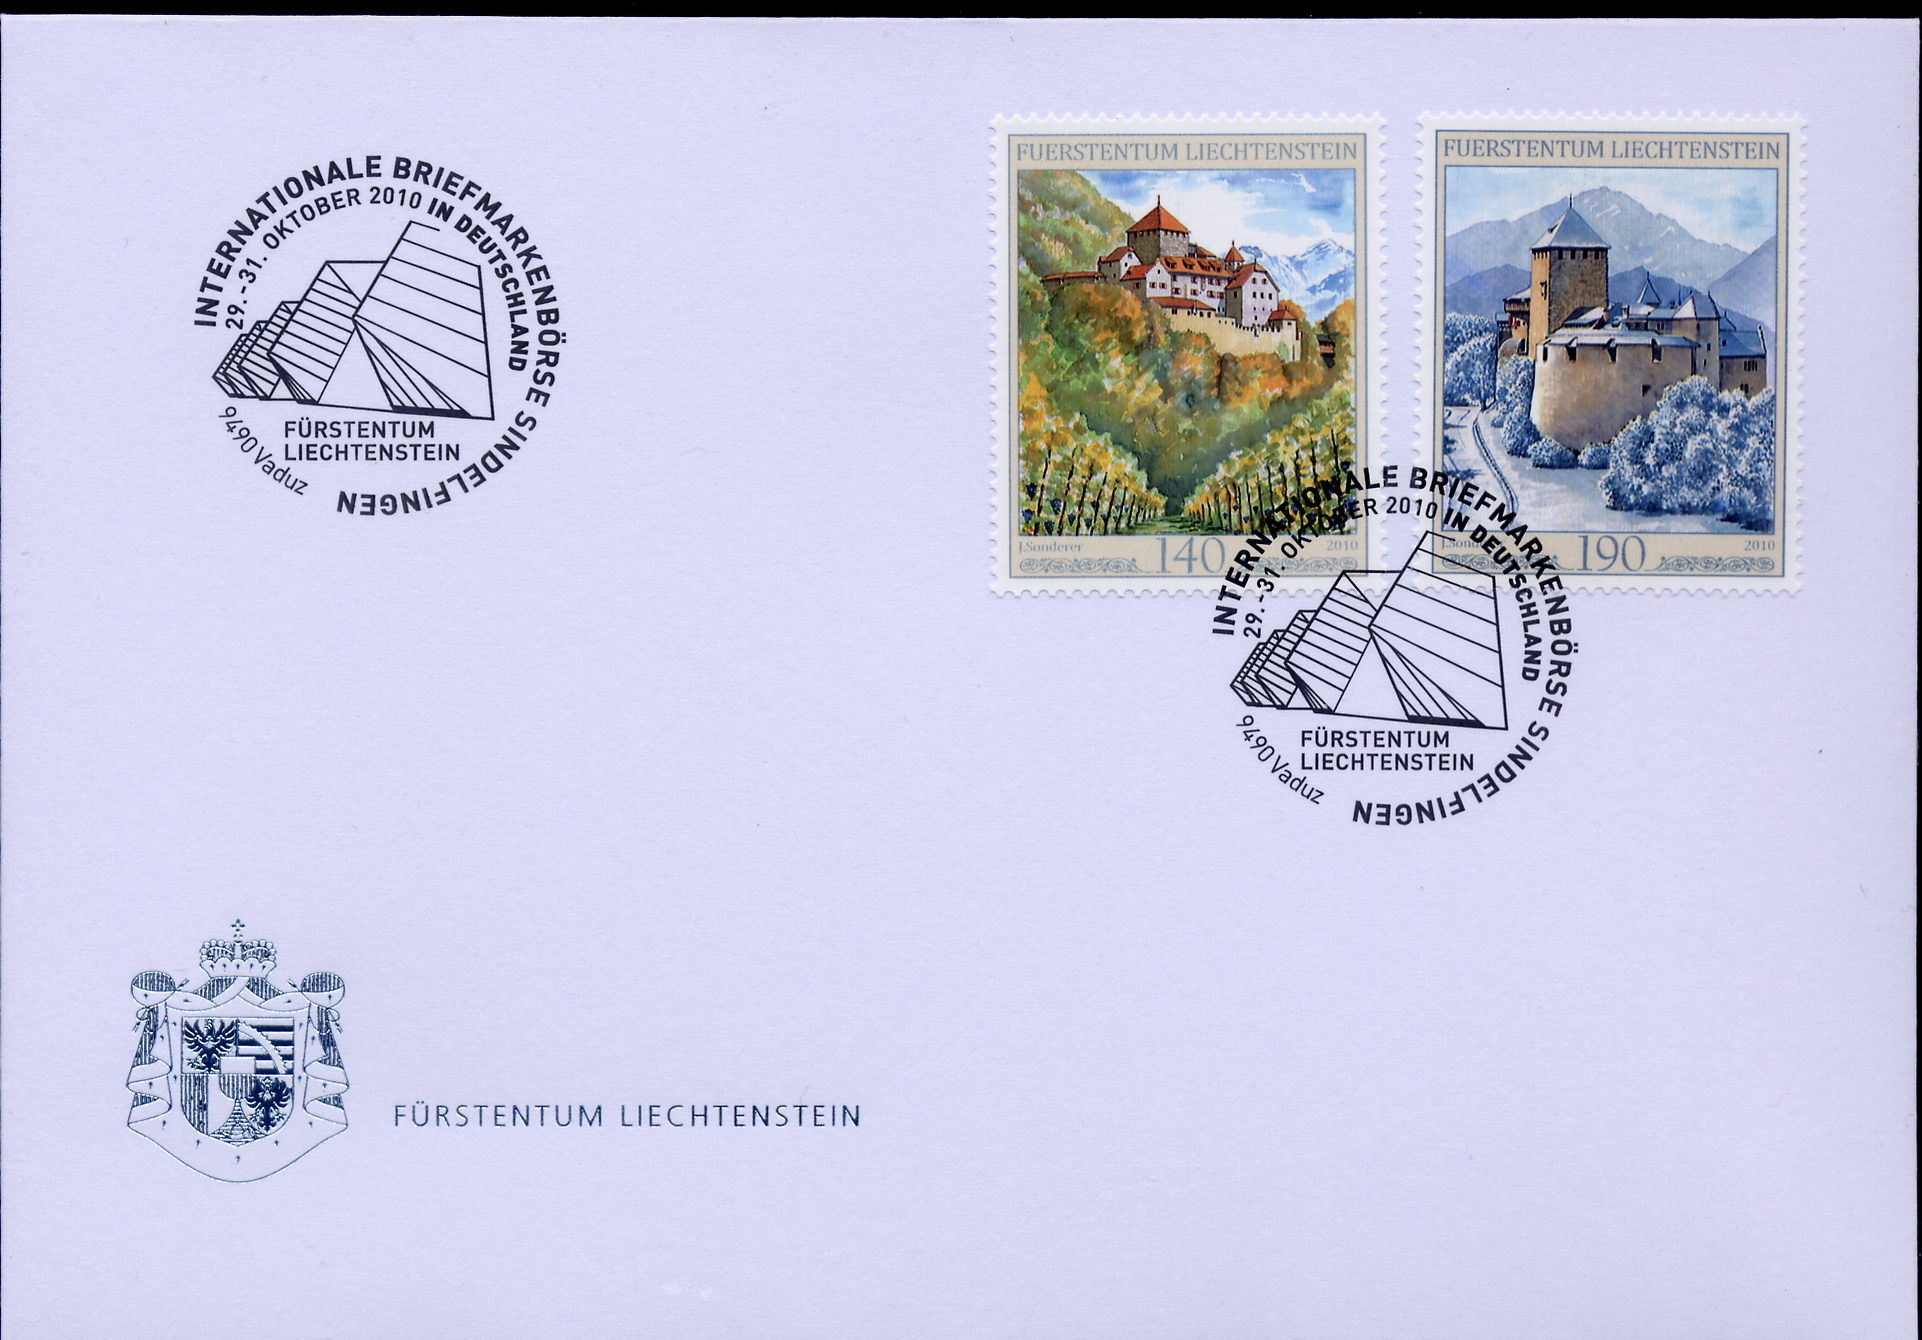 https://swiss-stamps.org/wp-content/uploads/2023/12/2010-10-Sindelfingen.jpg